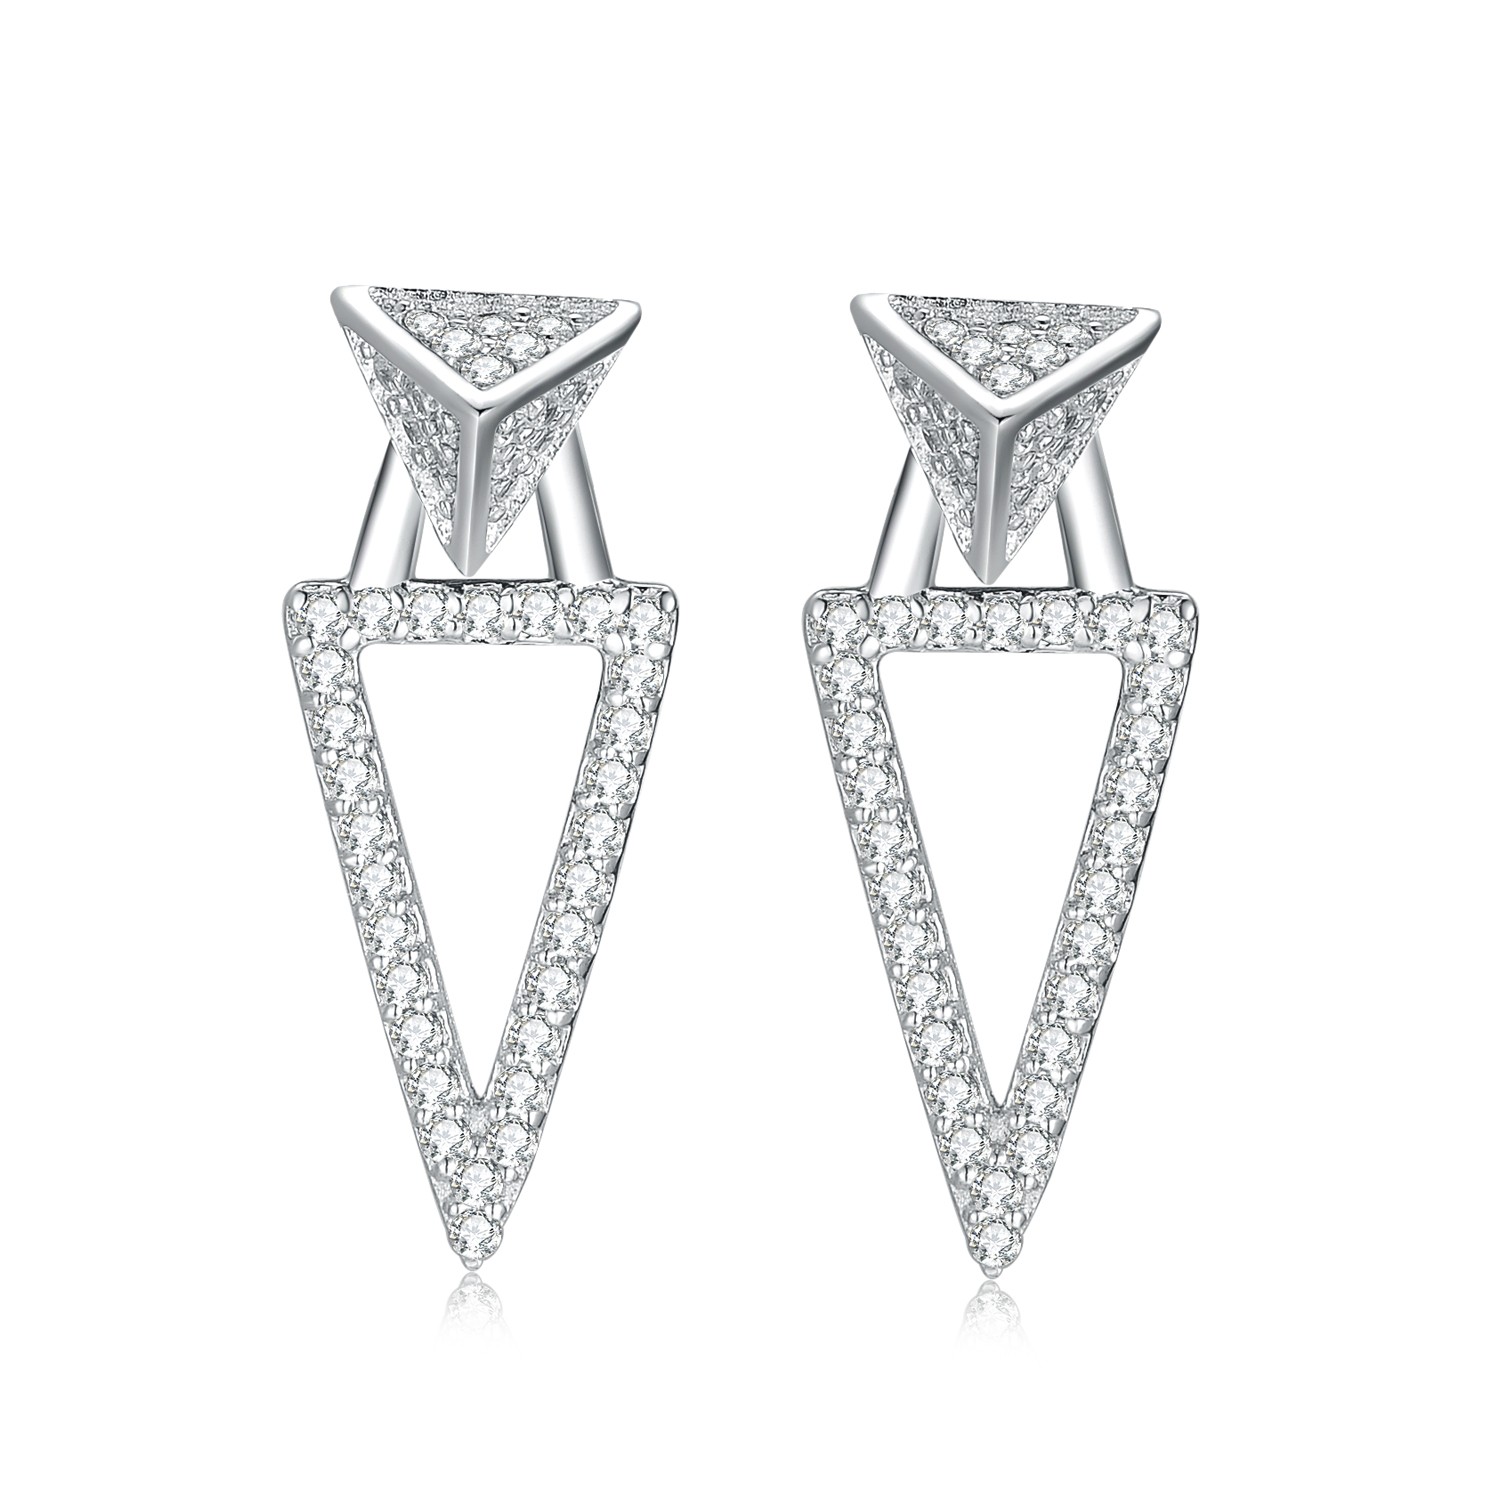 Luxury Jewelry Earring 925 Sterling Silver Women Fashionable CZ Triangle Stud Earring